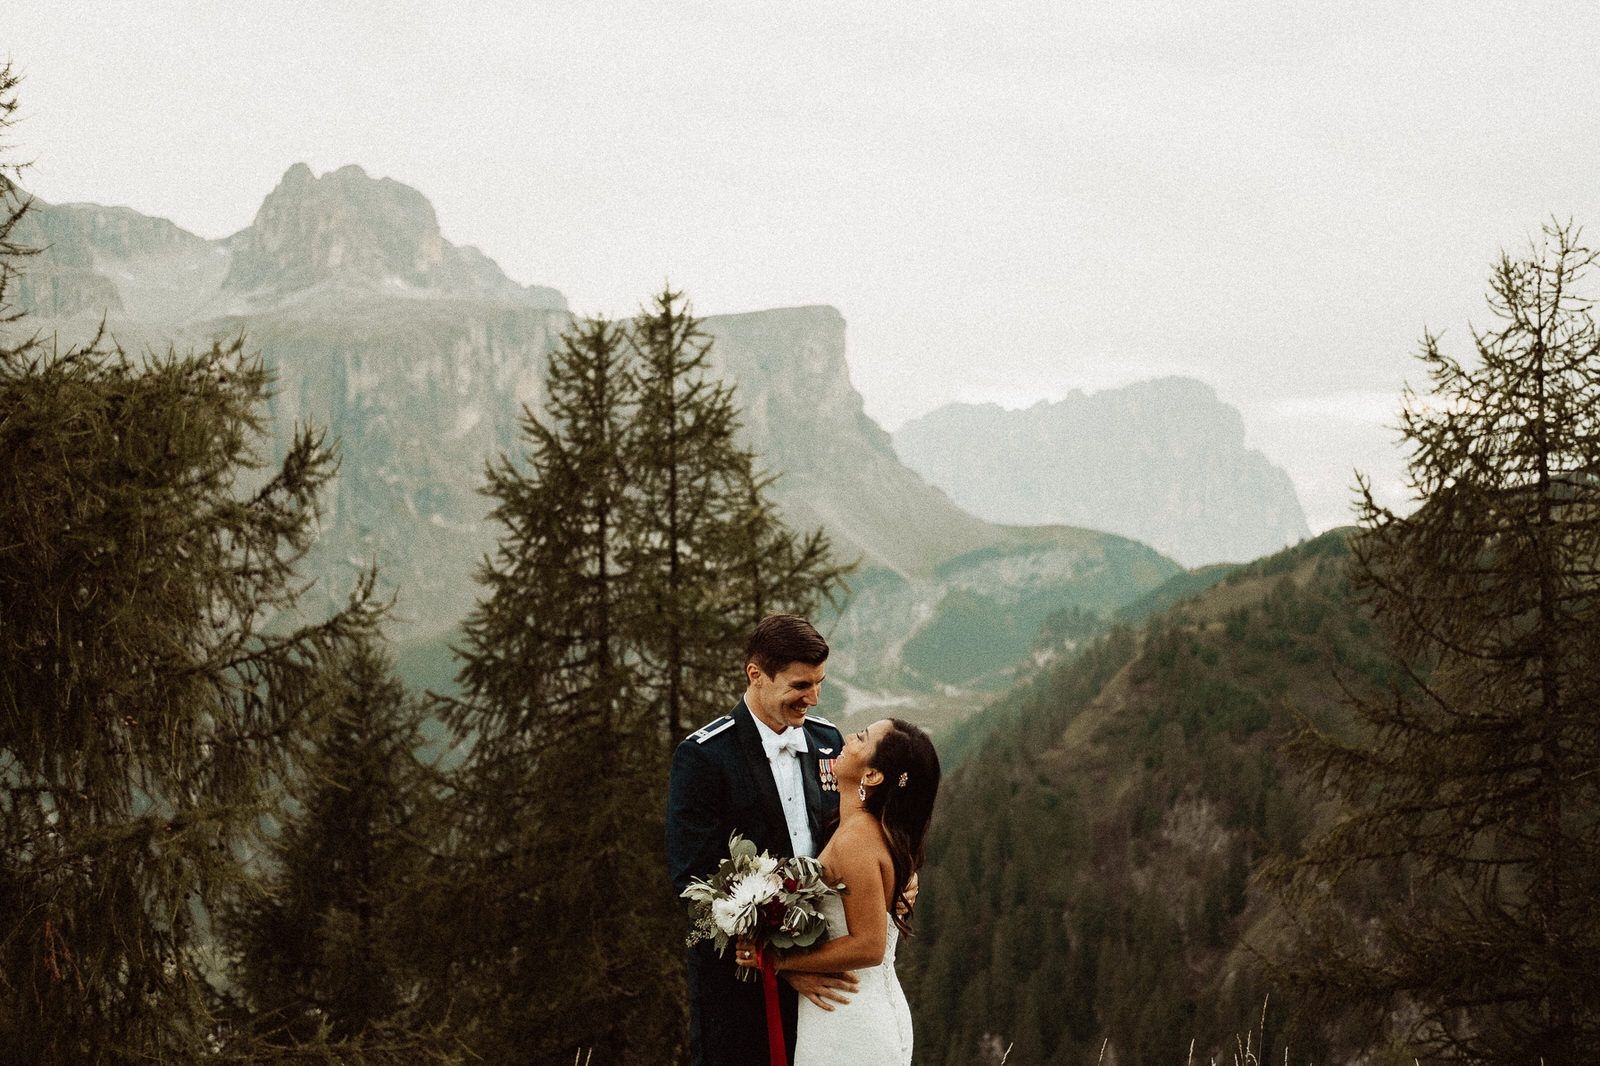 Portraits - Wedding in the Dolomites, Colfosco, Italy - Italian Apls